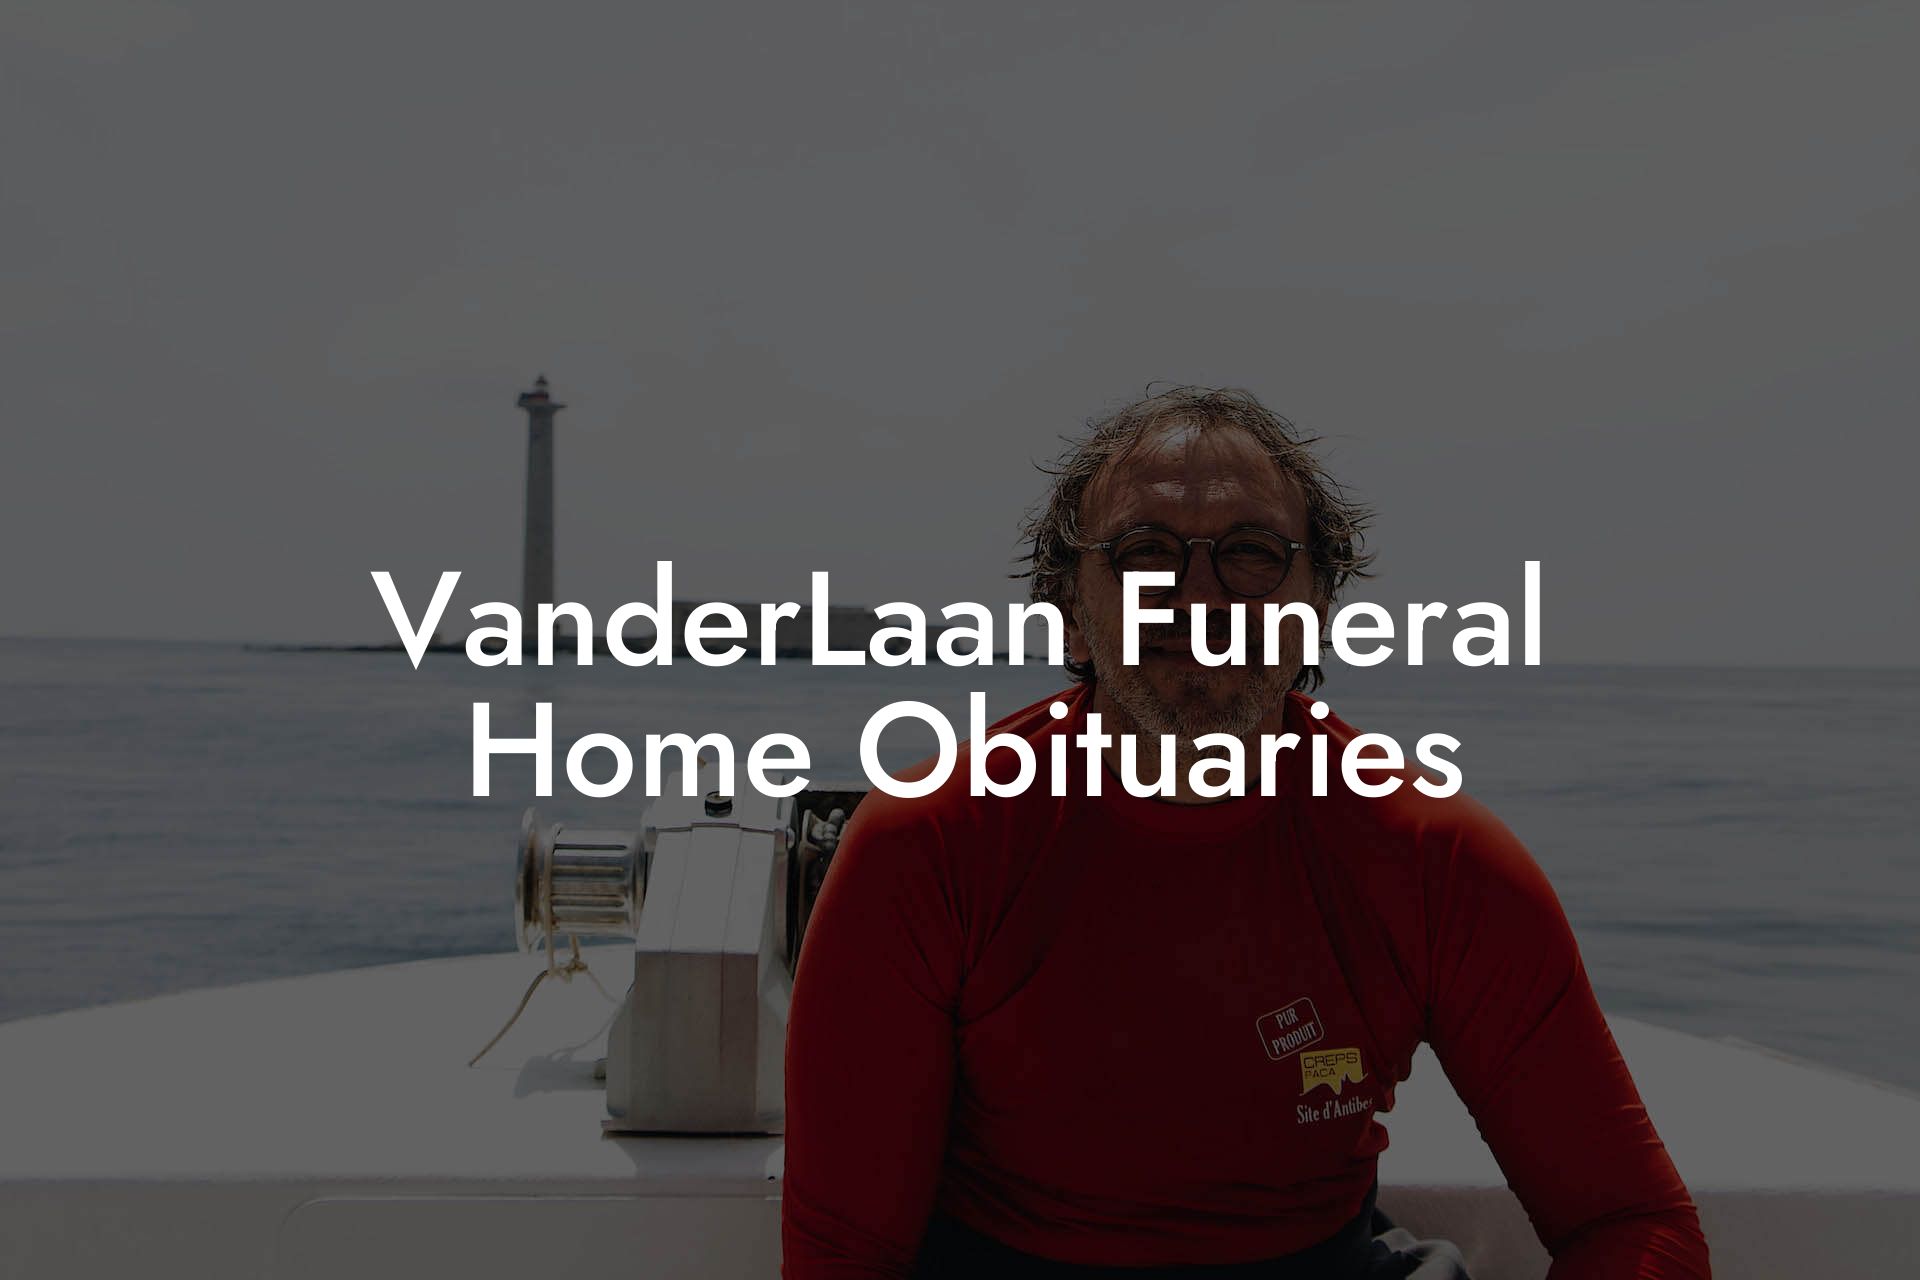 VanderLaan Funeral Home Obituaries